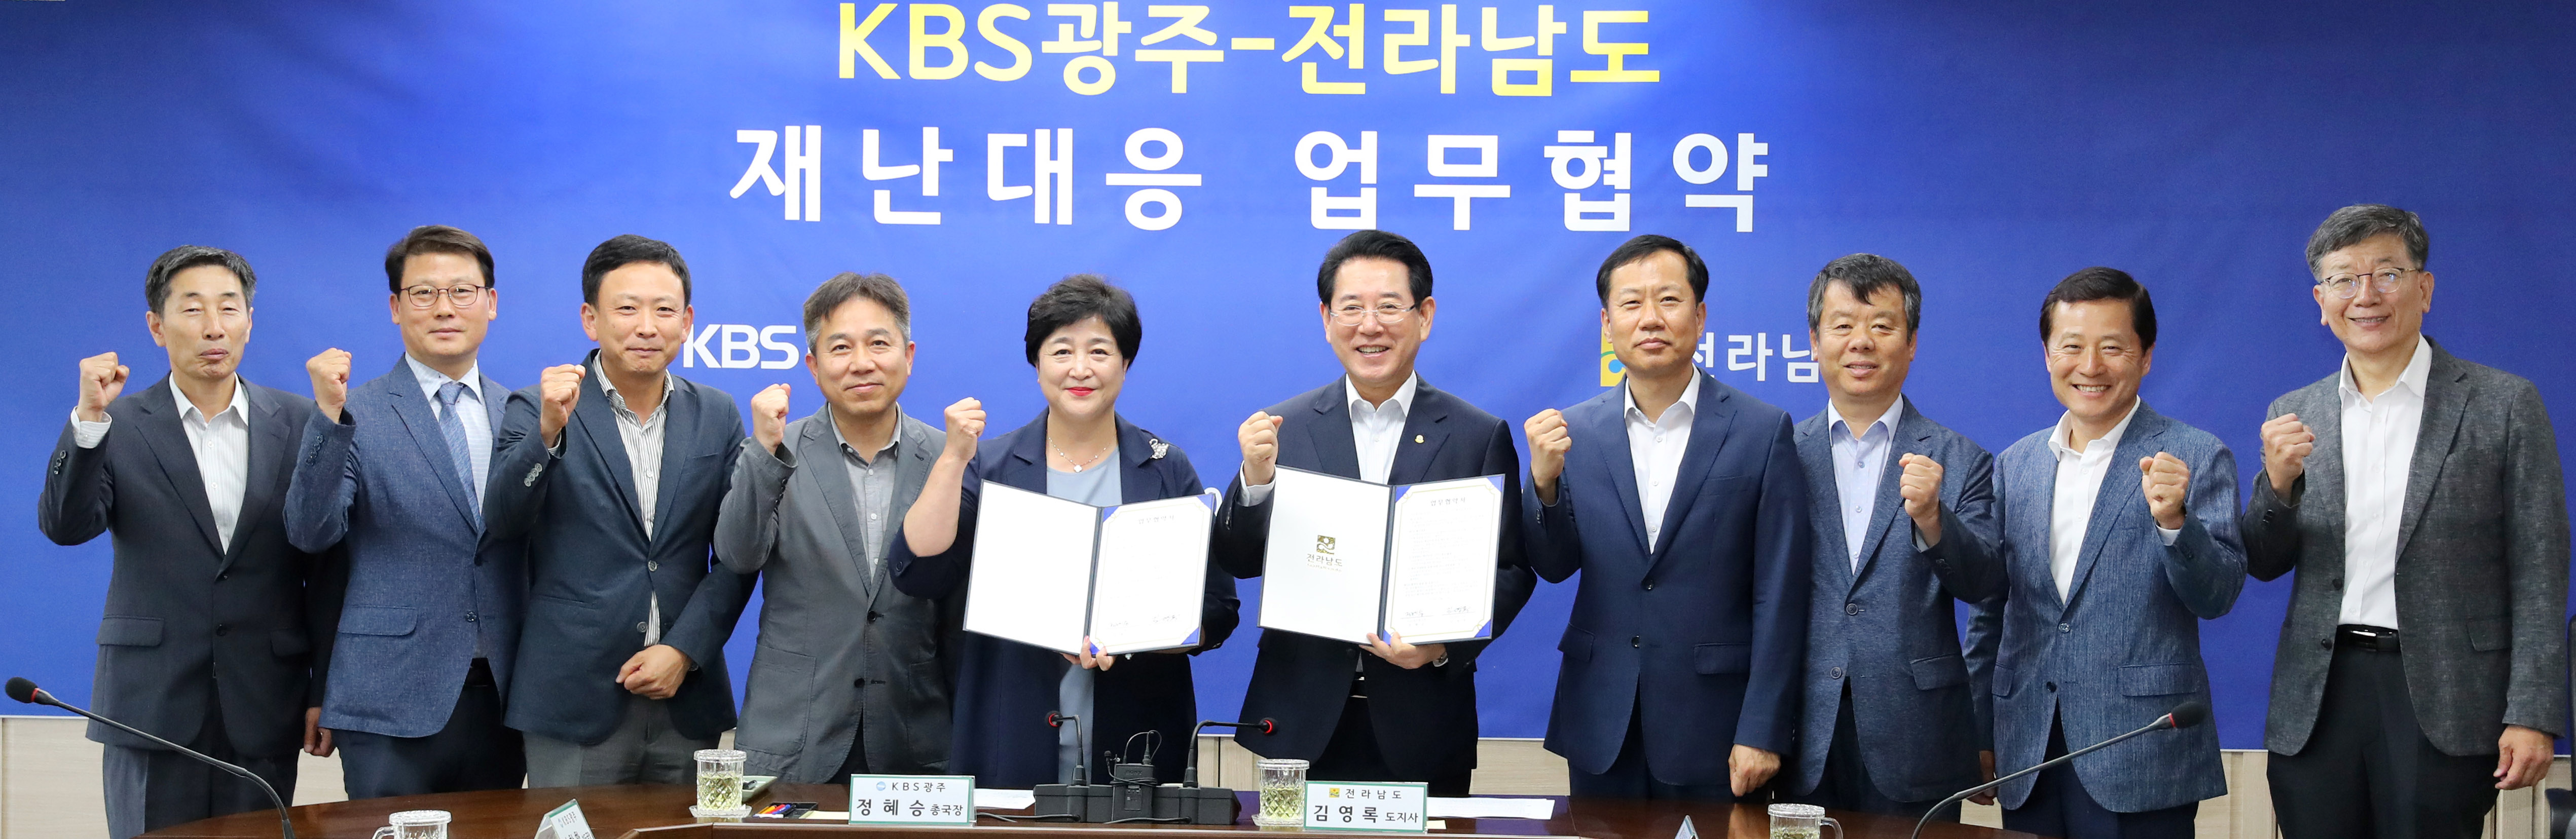 KBS광주방송총국와 재난대응업무협약 맺어1